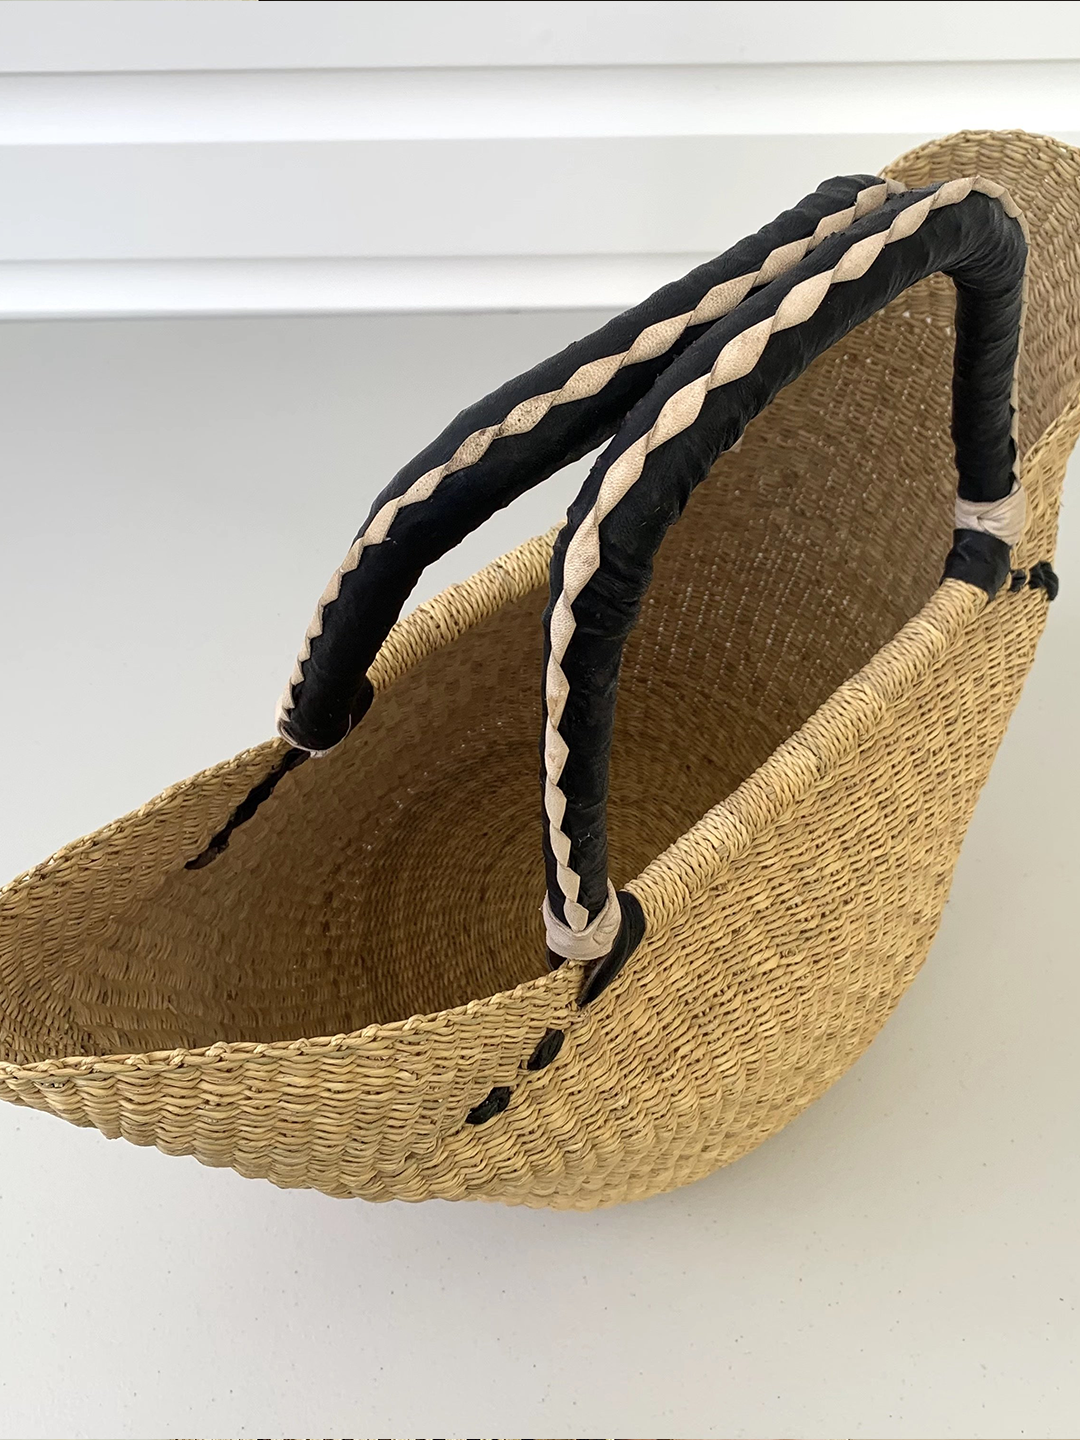 Sorrento Baskets - Black solid weave with Poms Poms